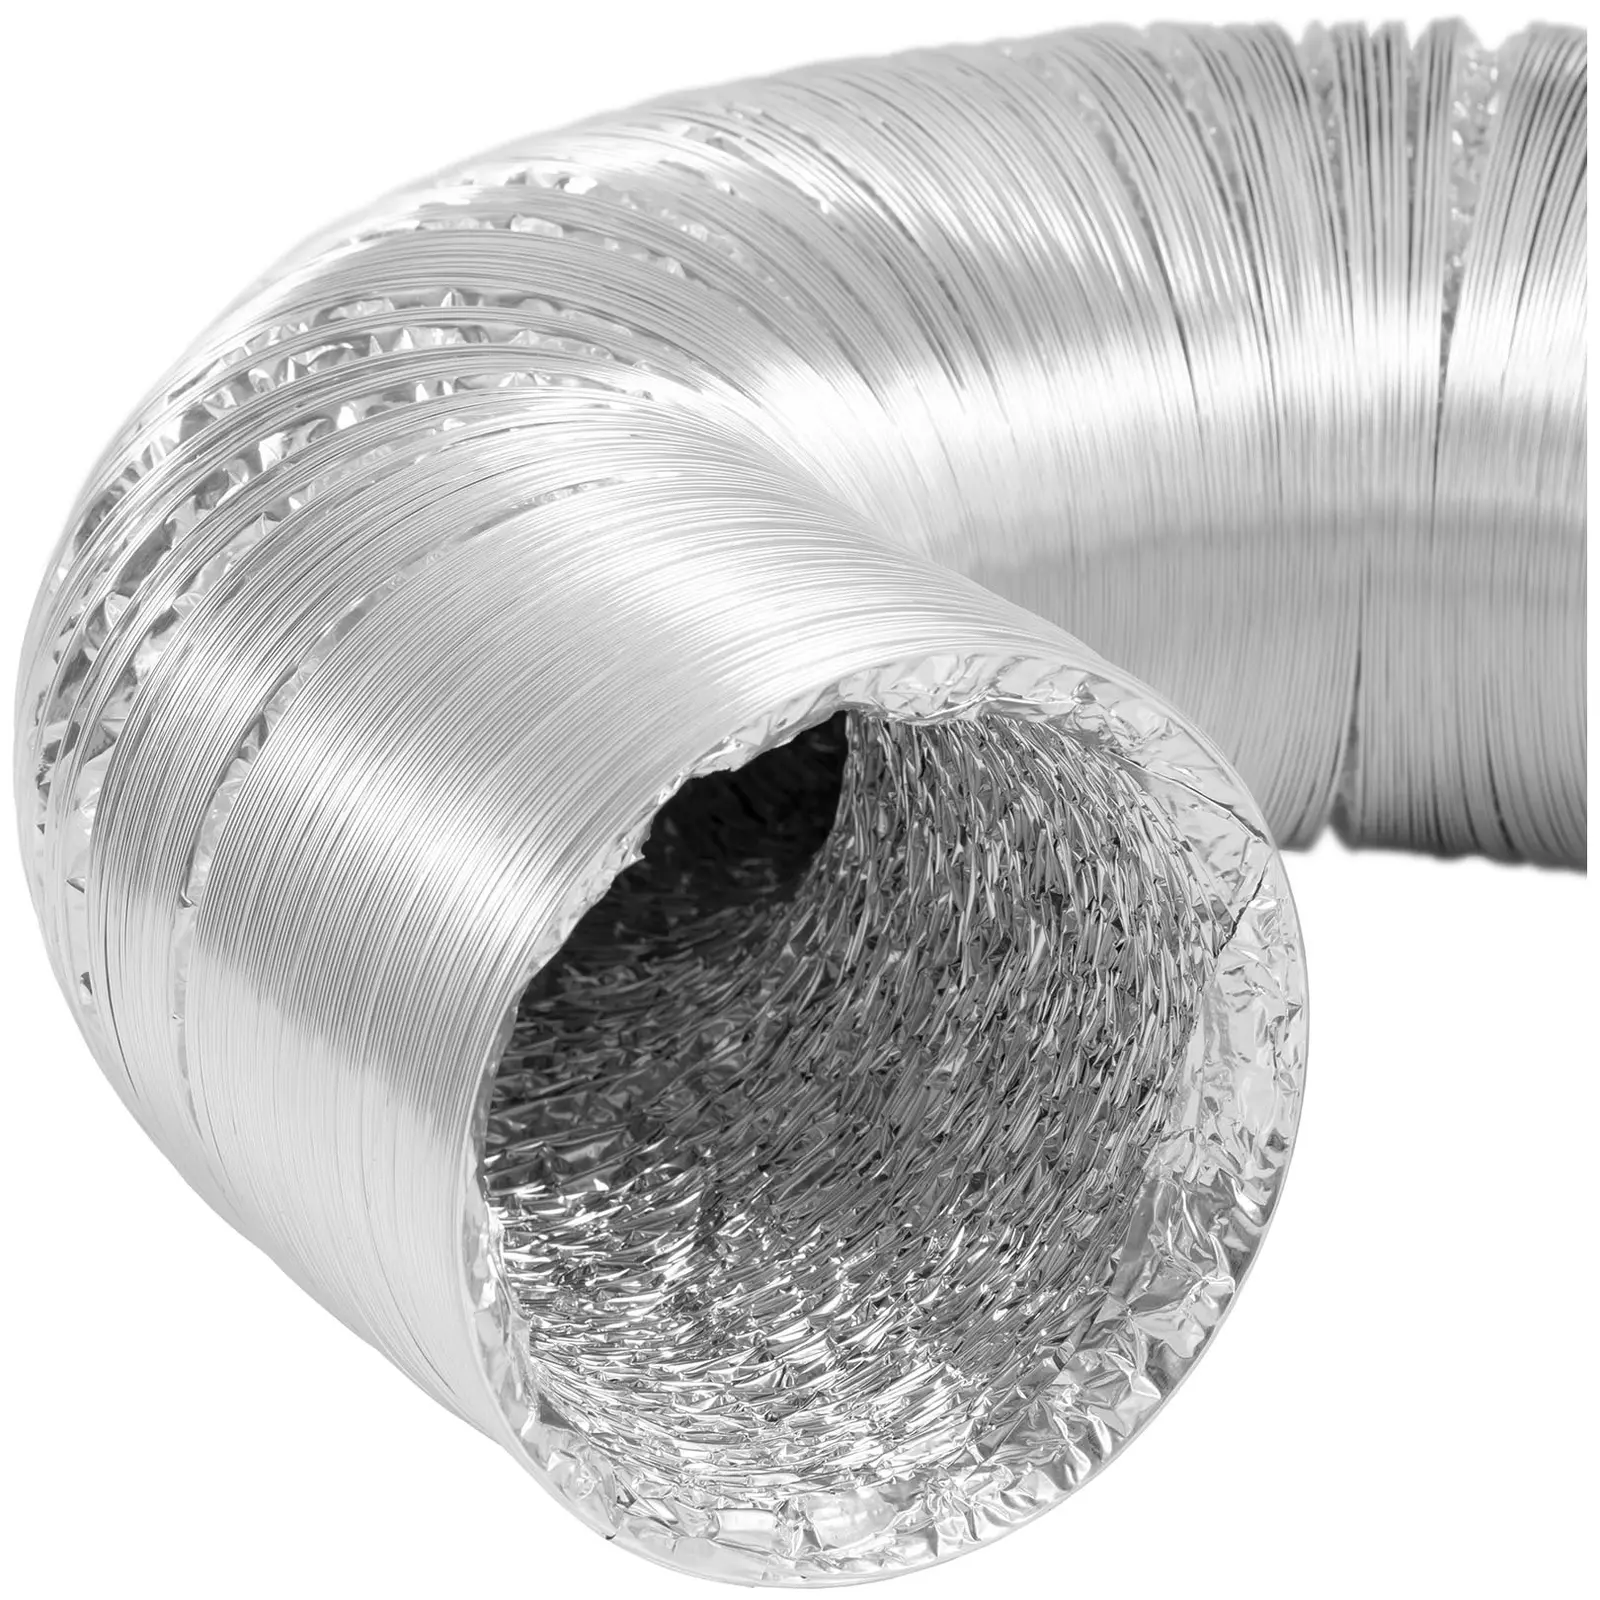 Wąż do wentylatora przemysłowego - Ø125 mm - długość 10 m - aluminium